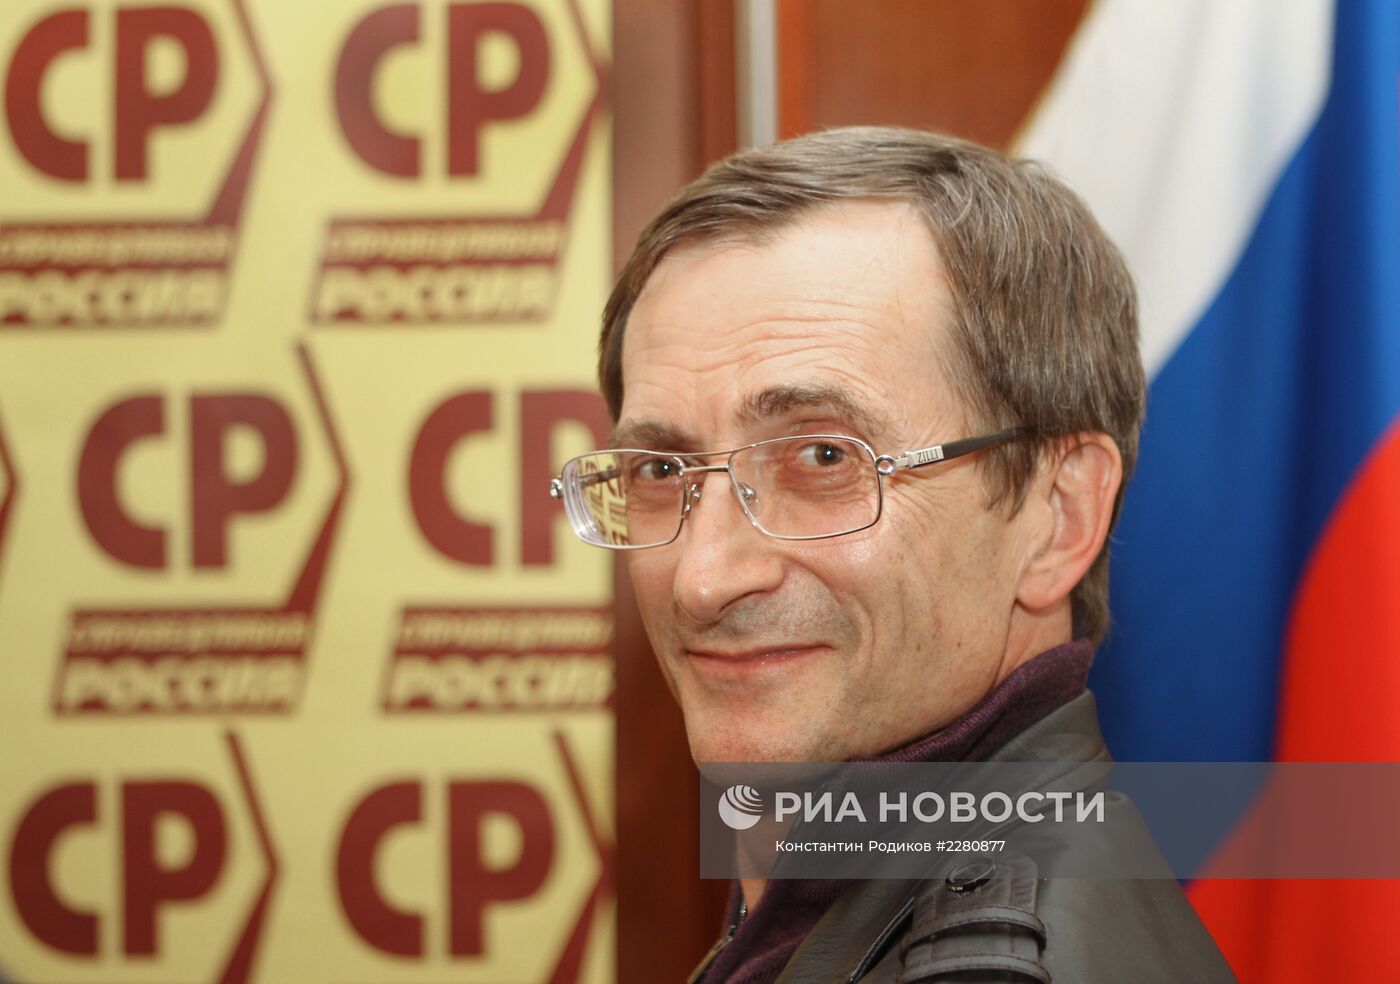 Пресс-конференция Н.Левичева в избирательном штабе